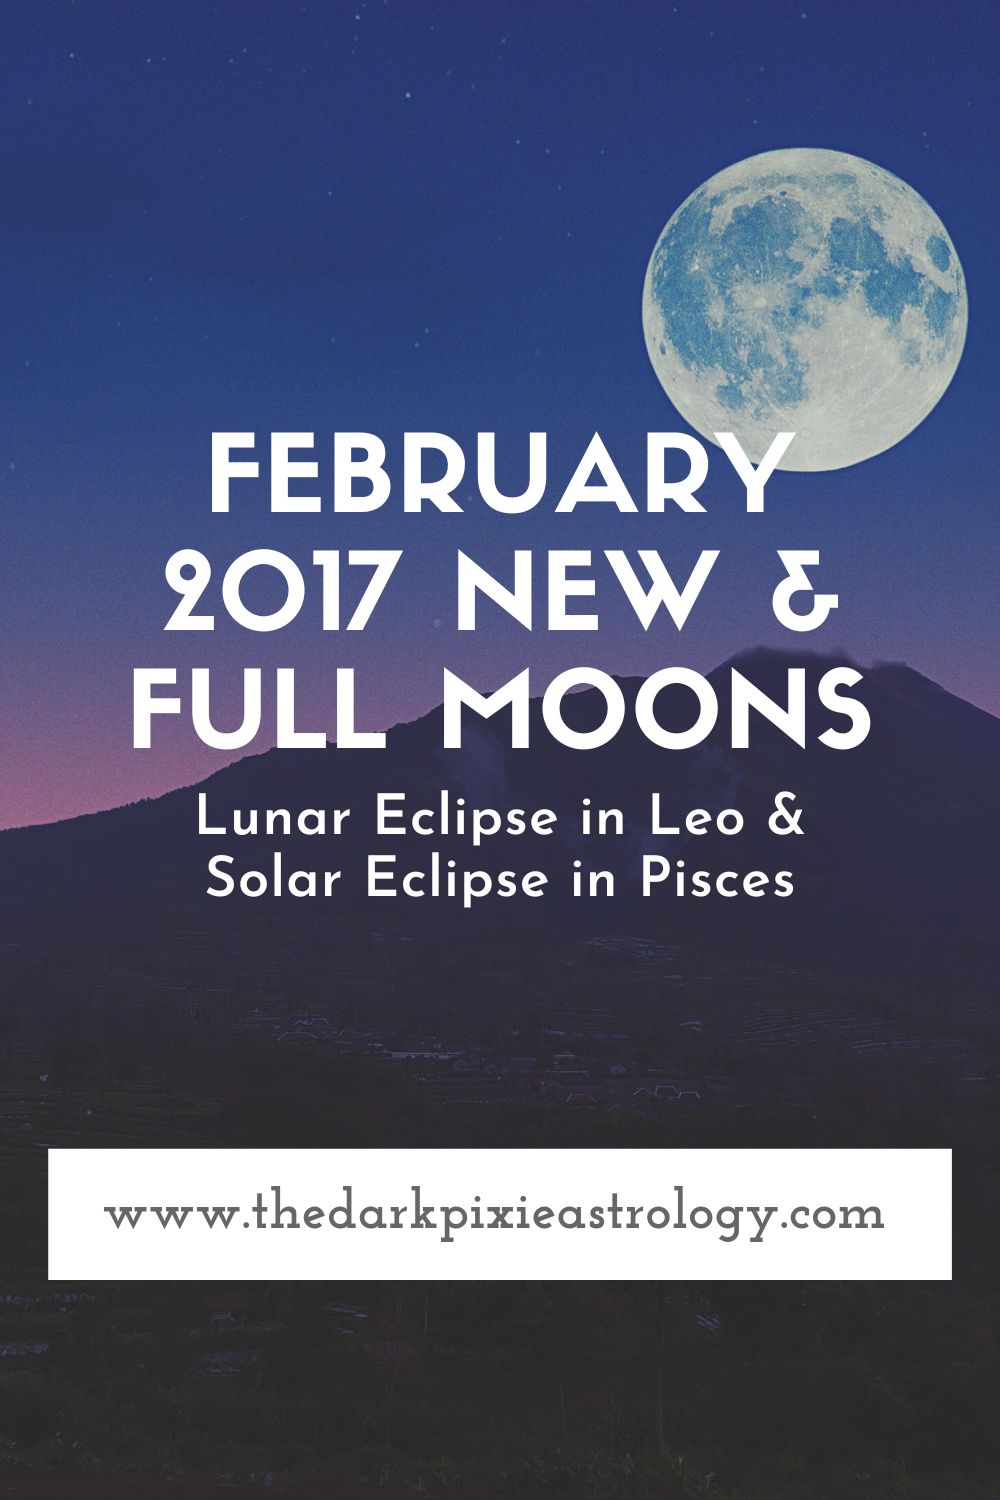 February 2017 New & Full Moons - The Dark Pixie Astrology